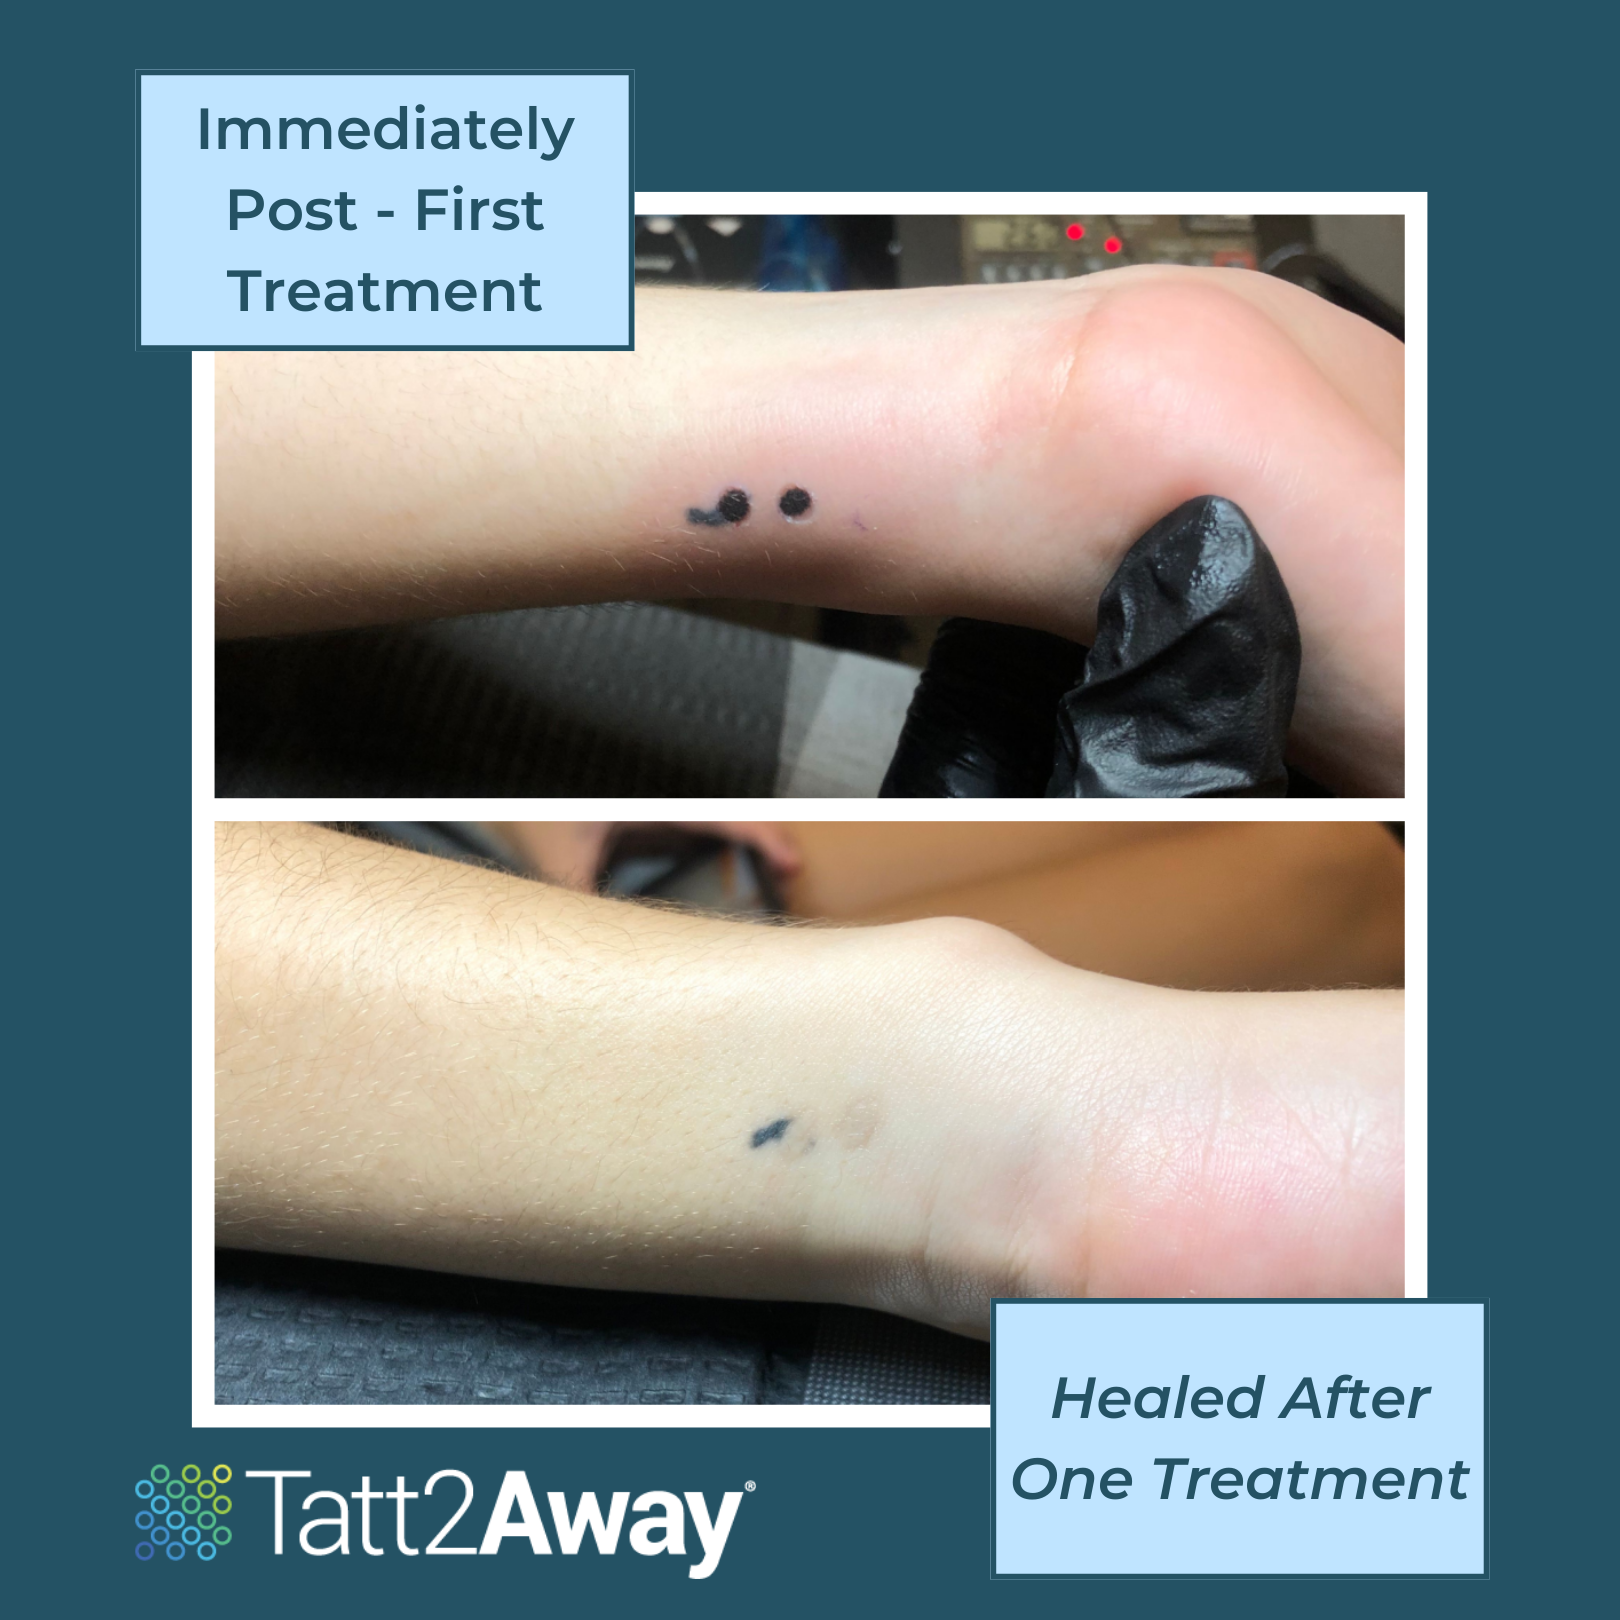 Tatt2Away Process: Immediately Post One Treatment